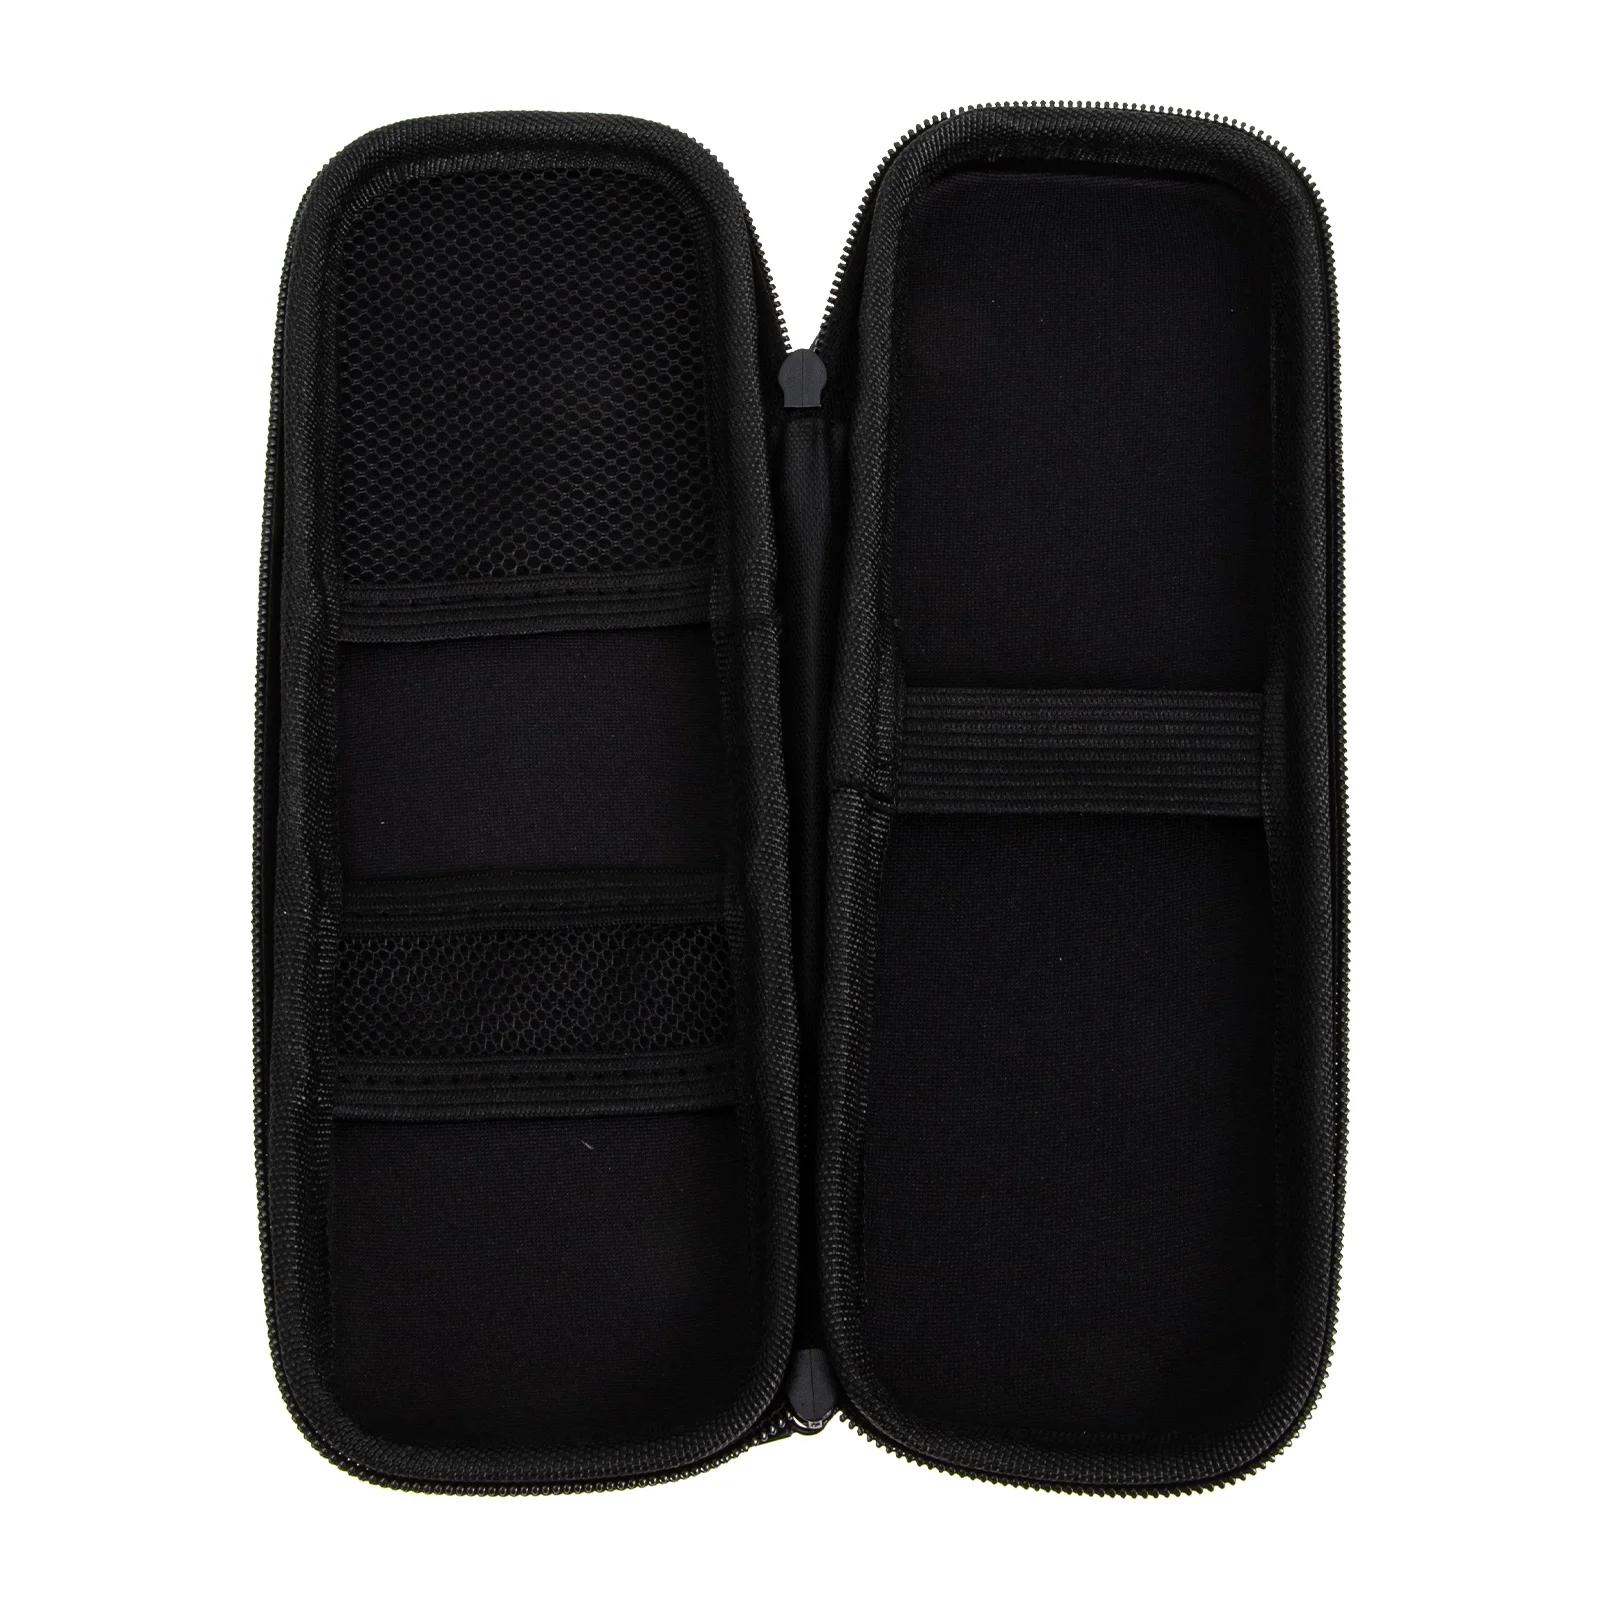 Harmonica 가방 케이스 보관 EVA 보호 핸드백, 충격 방지 휴대 폴리에스터 액세서리